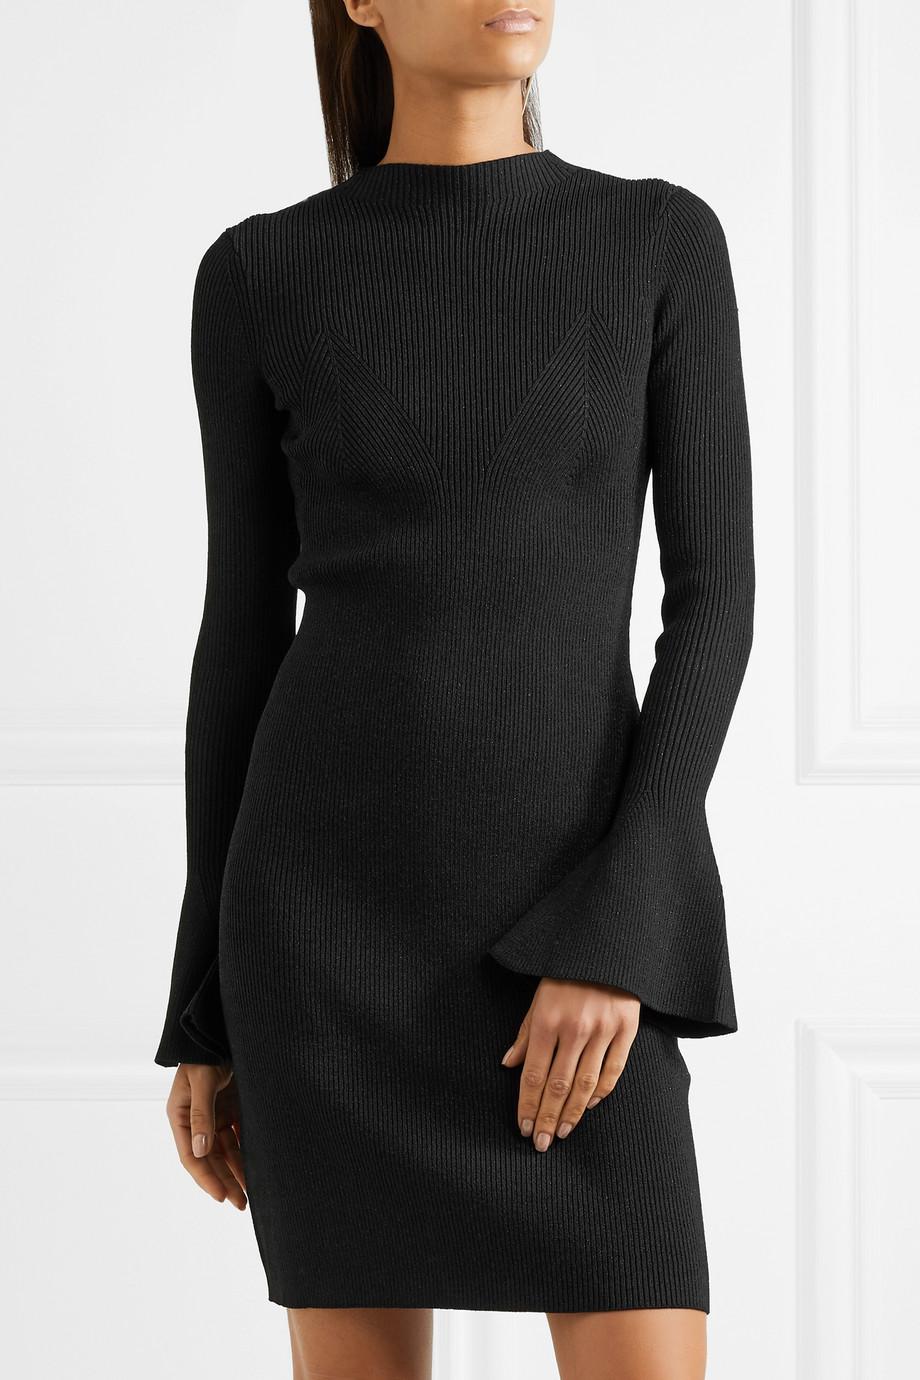 Maje Metallic Ribbed-knit Mini Dress in Black - Lyst